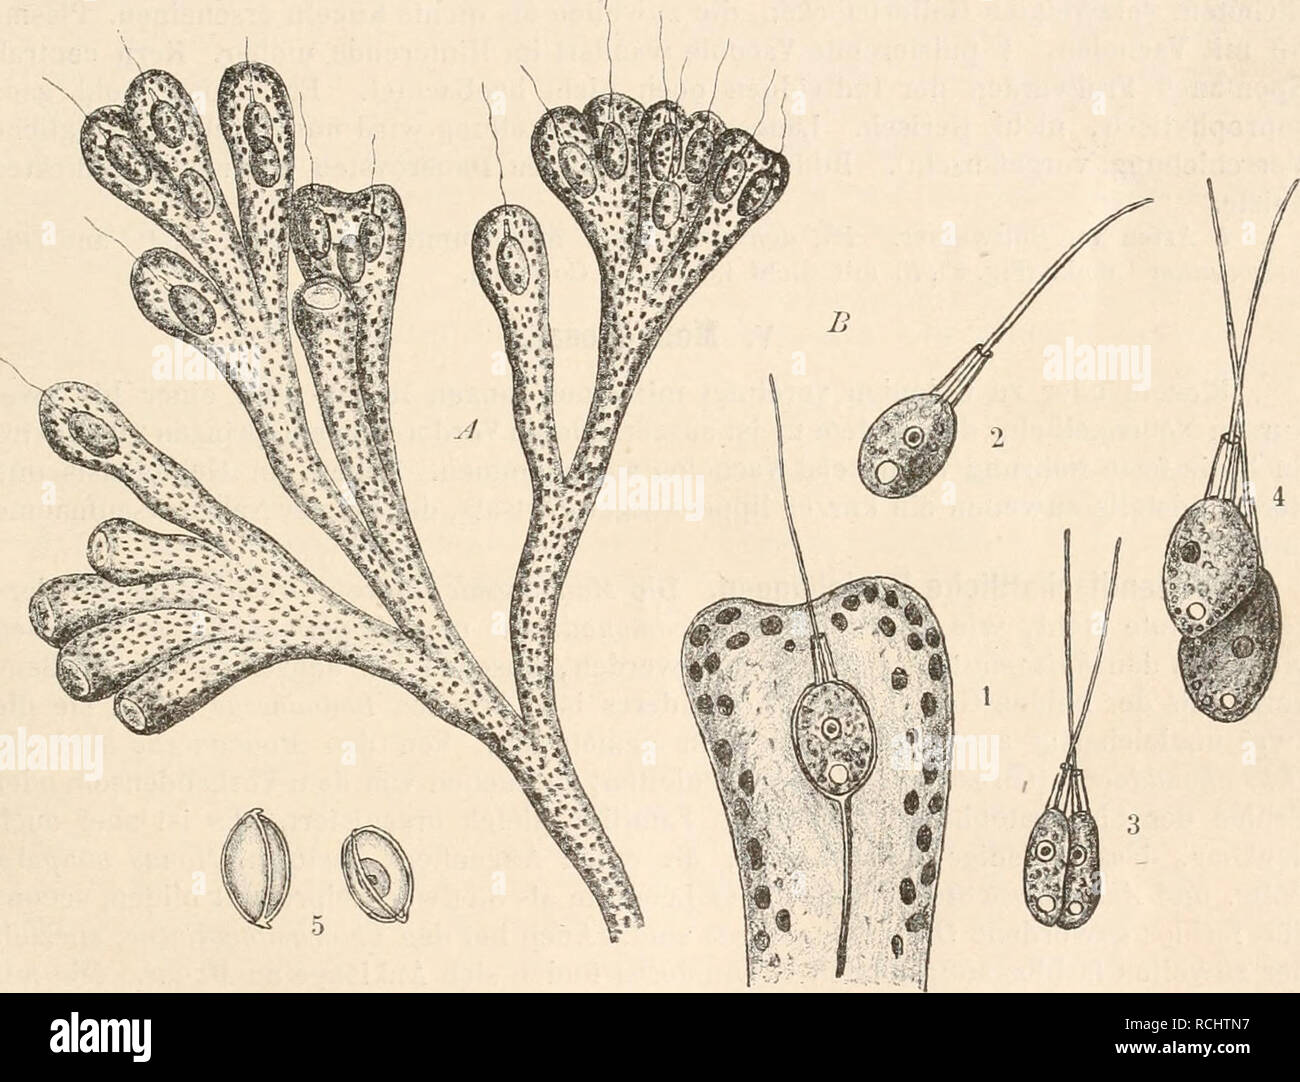 . Die Natürlichen Pflanzenfamilien nebst ihren Gattungen und wichtigeren Arten, insbesondere den Nutzpflanzen, unter Mitwirkung zahlreicher hervorragender Fachgelehrten begründet. Botany. Protomastigineae. (Senn.) 129 2 Arten im Süßwasser z. B. D. frequentissima Zach. (Fig. 86, A). Zacharias, Plöner For- schungsber. II. 4 894 S. 75—76. groß; 12. Codonosigopsis (Robin) Senn. (Fig. 86 B). Kugelig, nackt, 10 — 1 5 [x einzeln oder mehrere Individuen zu Dolden vereinigt auf langen Stielen sitzend Codonosiga, aber mit 2 Kragen. 4 Art C. Robini Senn (Fig. 86, ß), im Süßwasser. 13. Liplosigopsis Franc Stock Photo